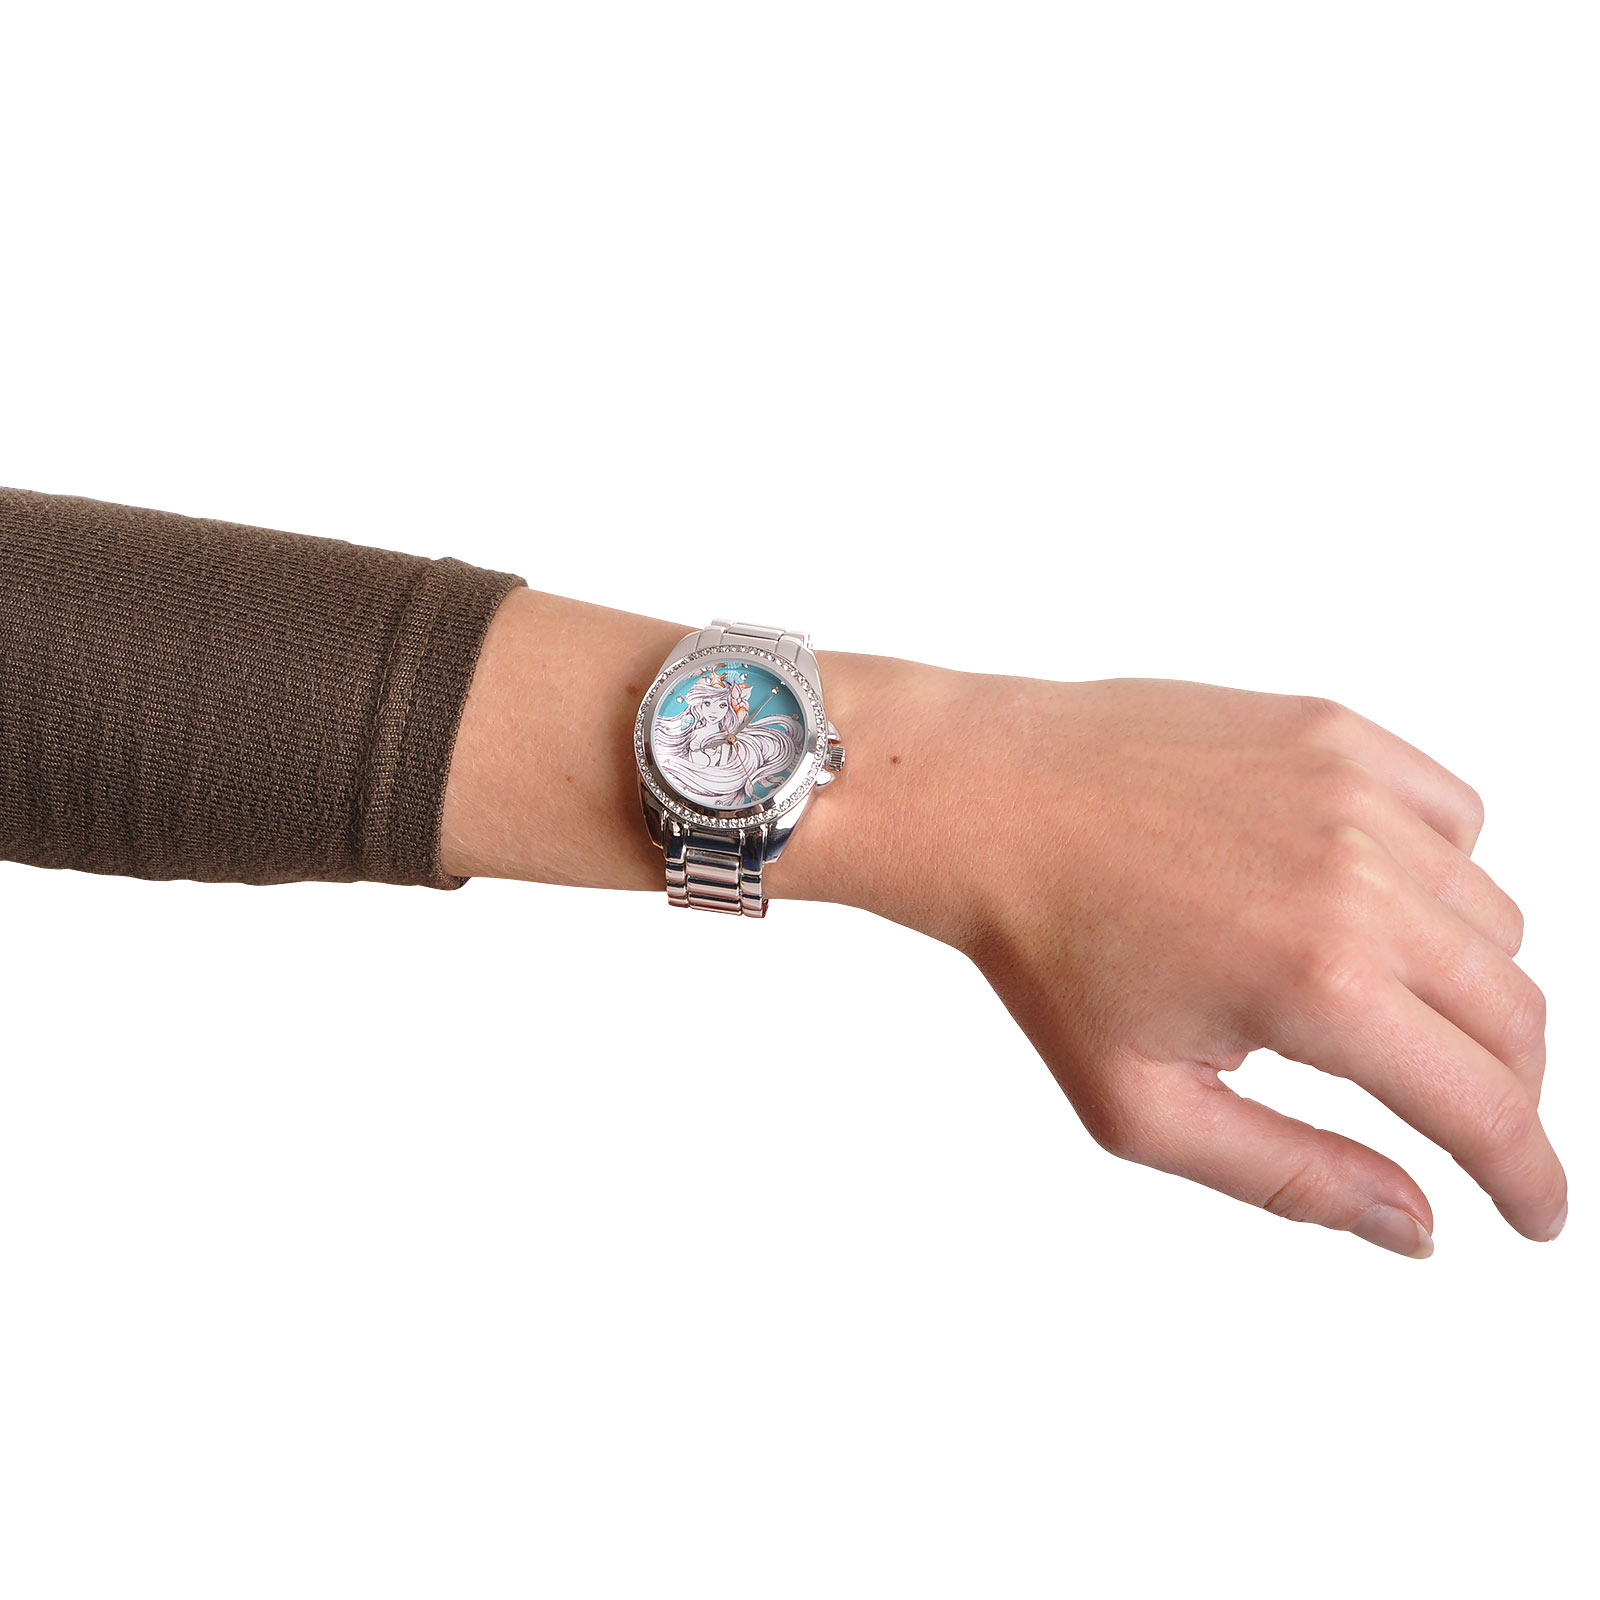 Arielle - Sketch Armbanduhr mit Kristallen